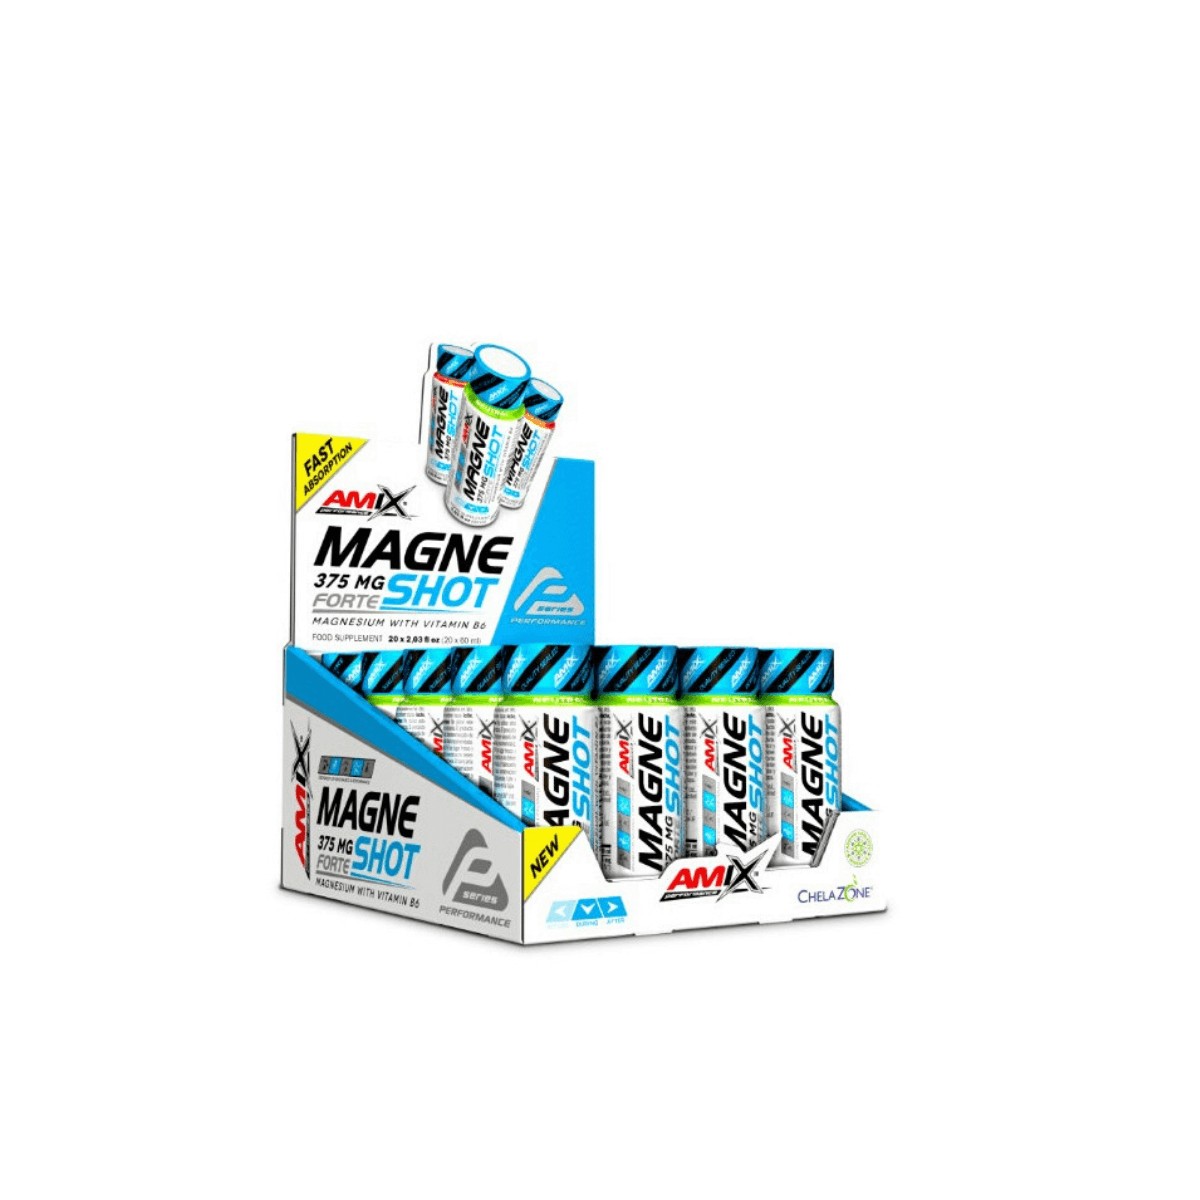 Performance günstig Kaufen-AMIX MagneShot Forte Griff 1ud. AMIX MagneShot Forte Griff 1ud <![CDATA[AMIX MagneShot Forte 375 mg Mango AMIX Performance MagneShot Forte 375 mg ist ein neues Produkt AMIX PERFORMANCE, ein ultrakonzentriertes Magnesium, das eine Menge von 375 mg Magnesiu